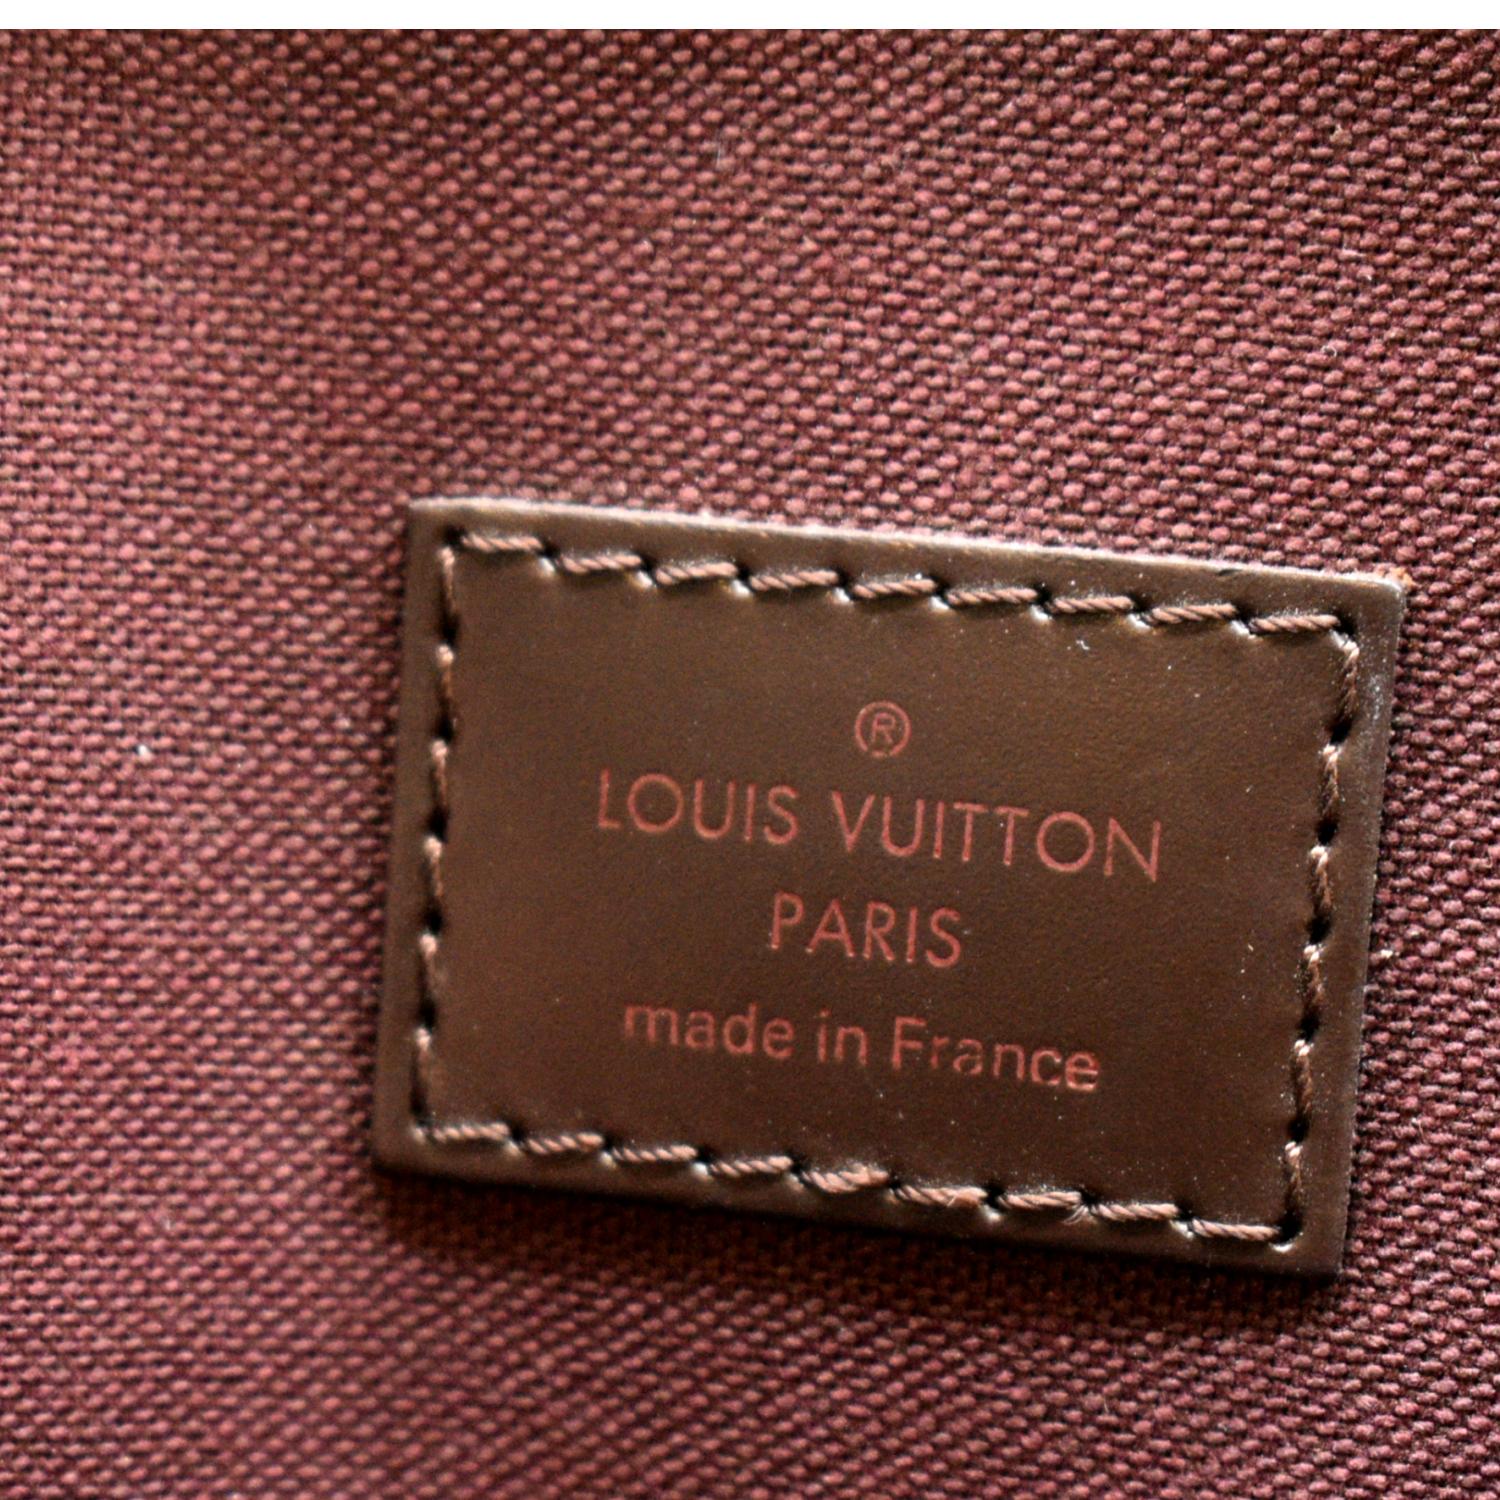 Louis Vuitton - Hoxton PM Damier Ebene Canvas